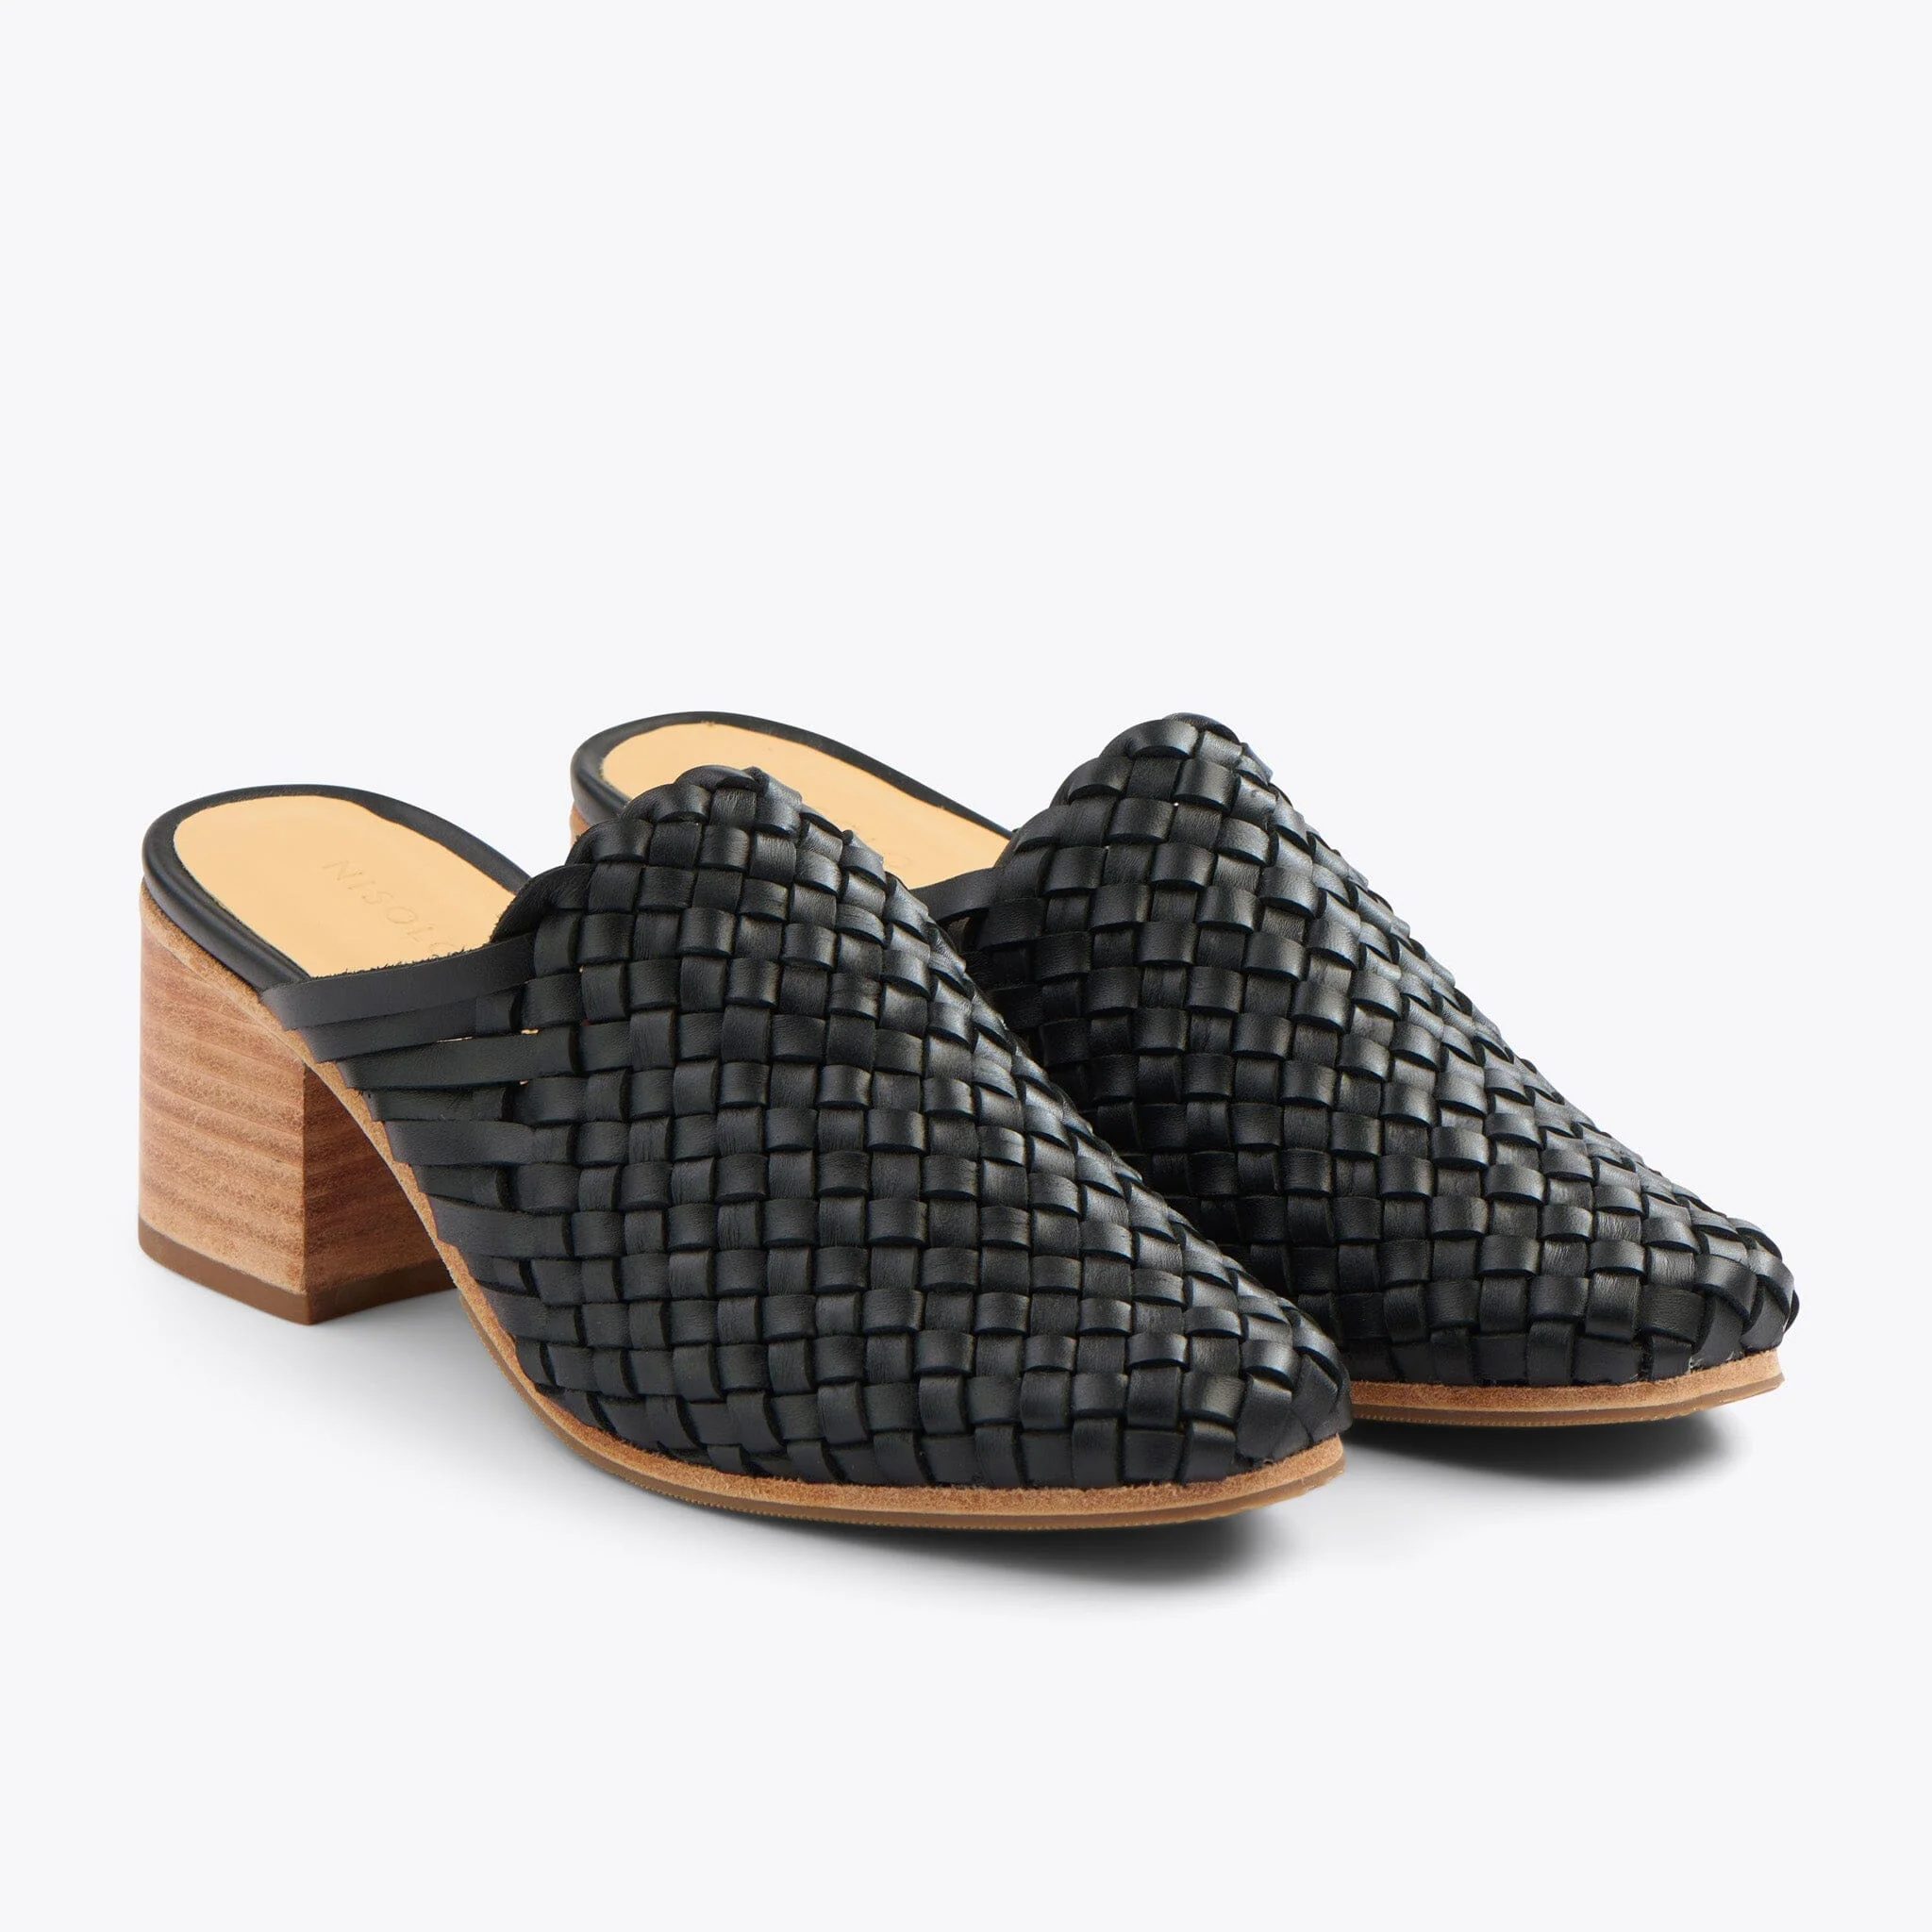 A pair of braided black mule heels. 